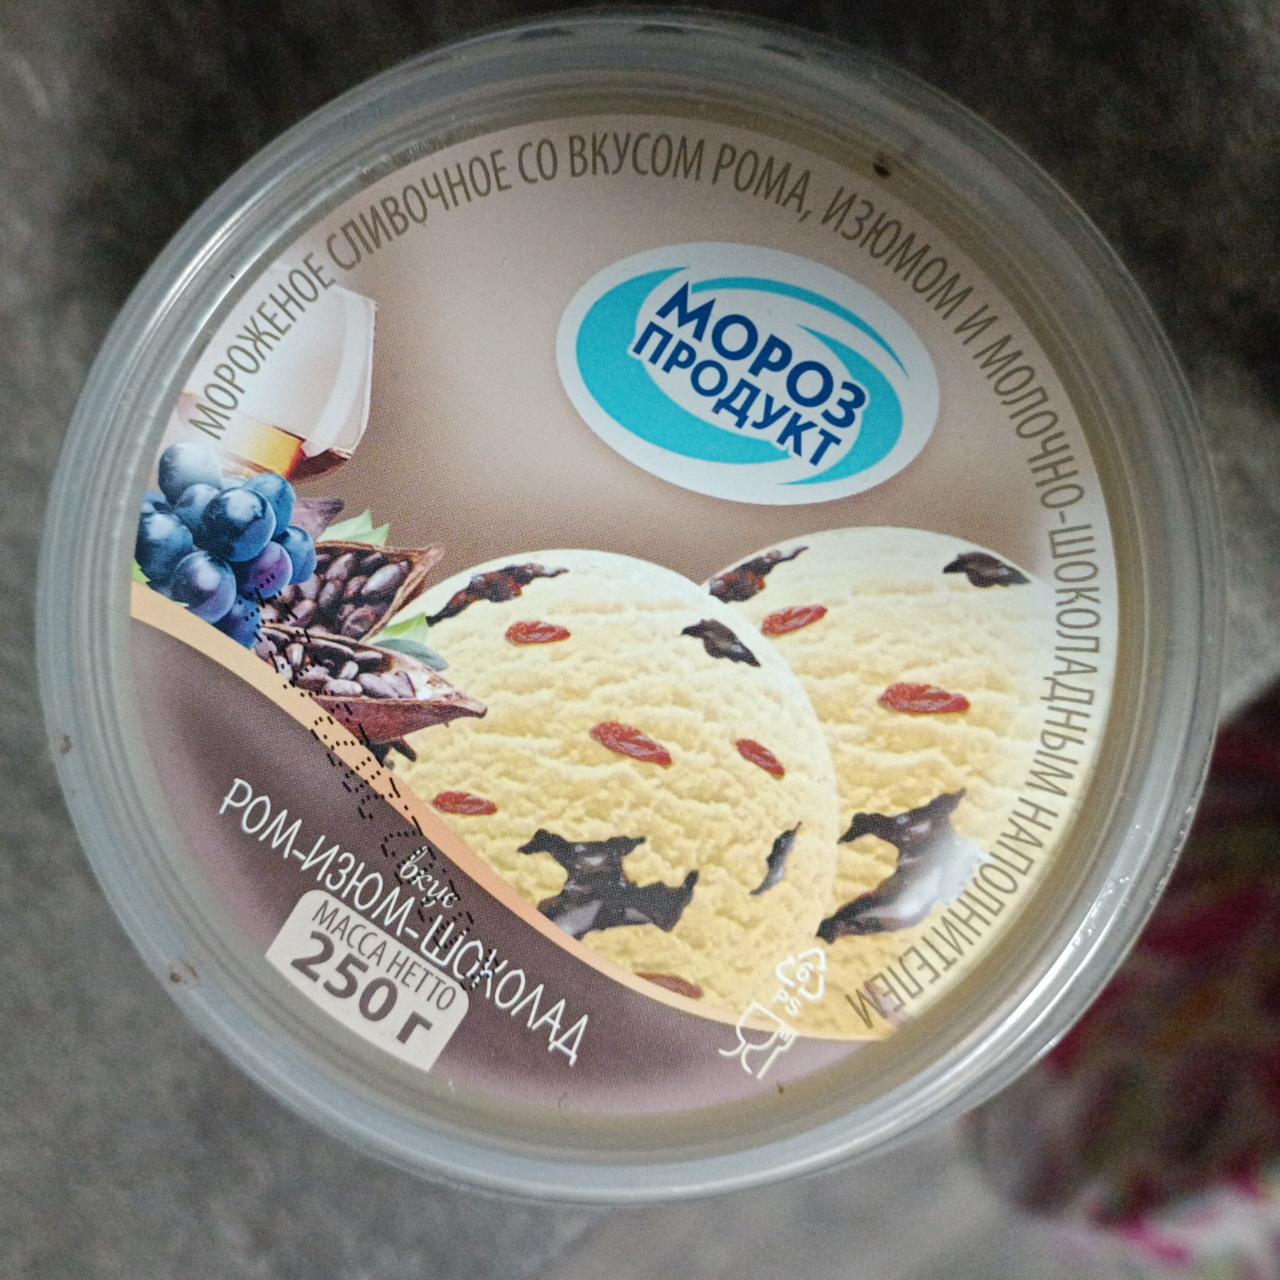 Фото - Мороженое ром-изюм-шоколад Мороз продукт